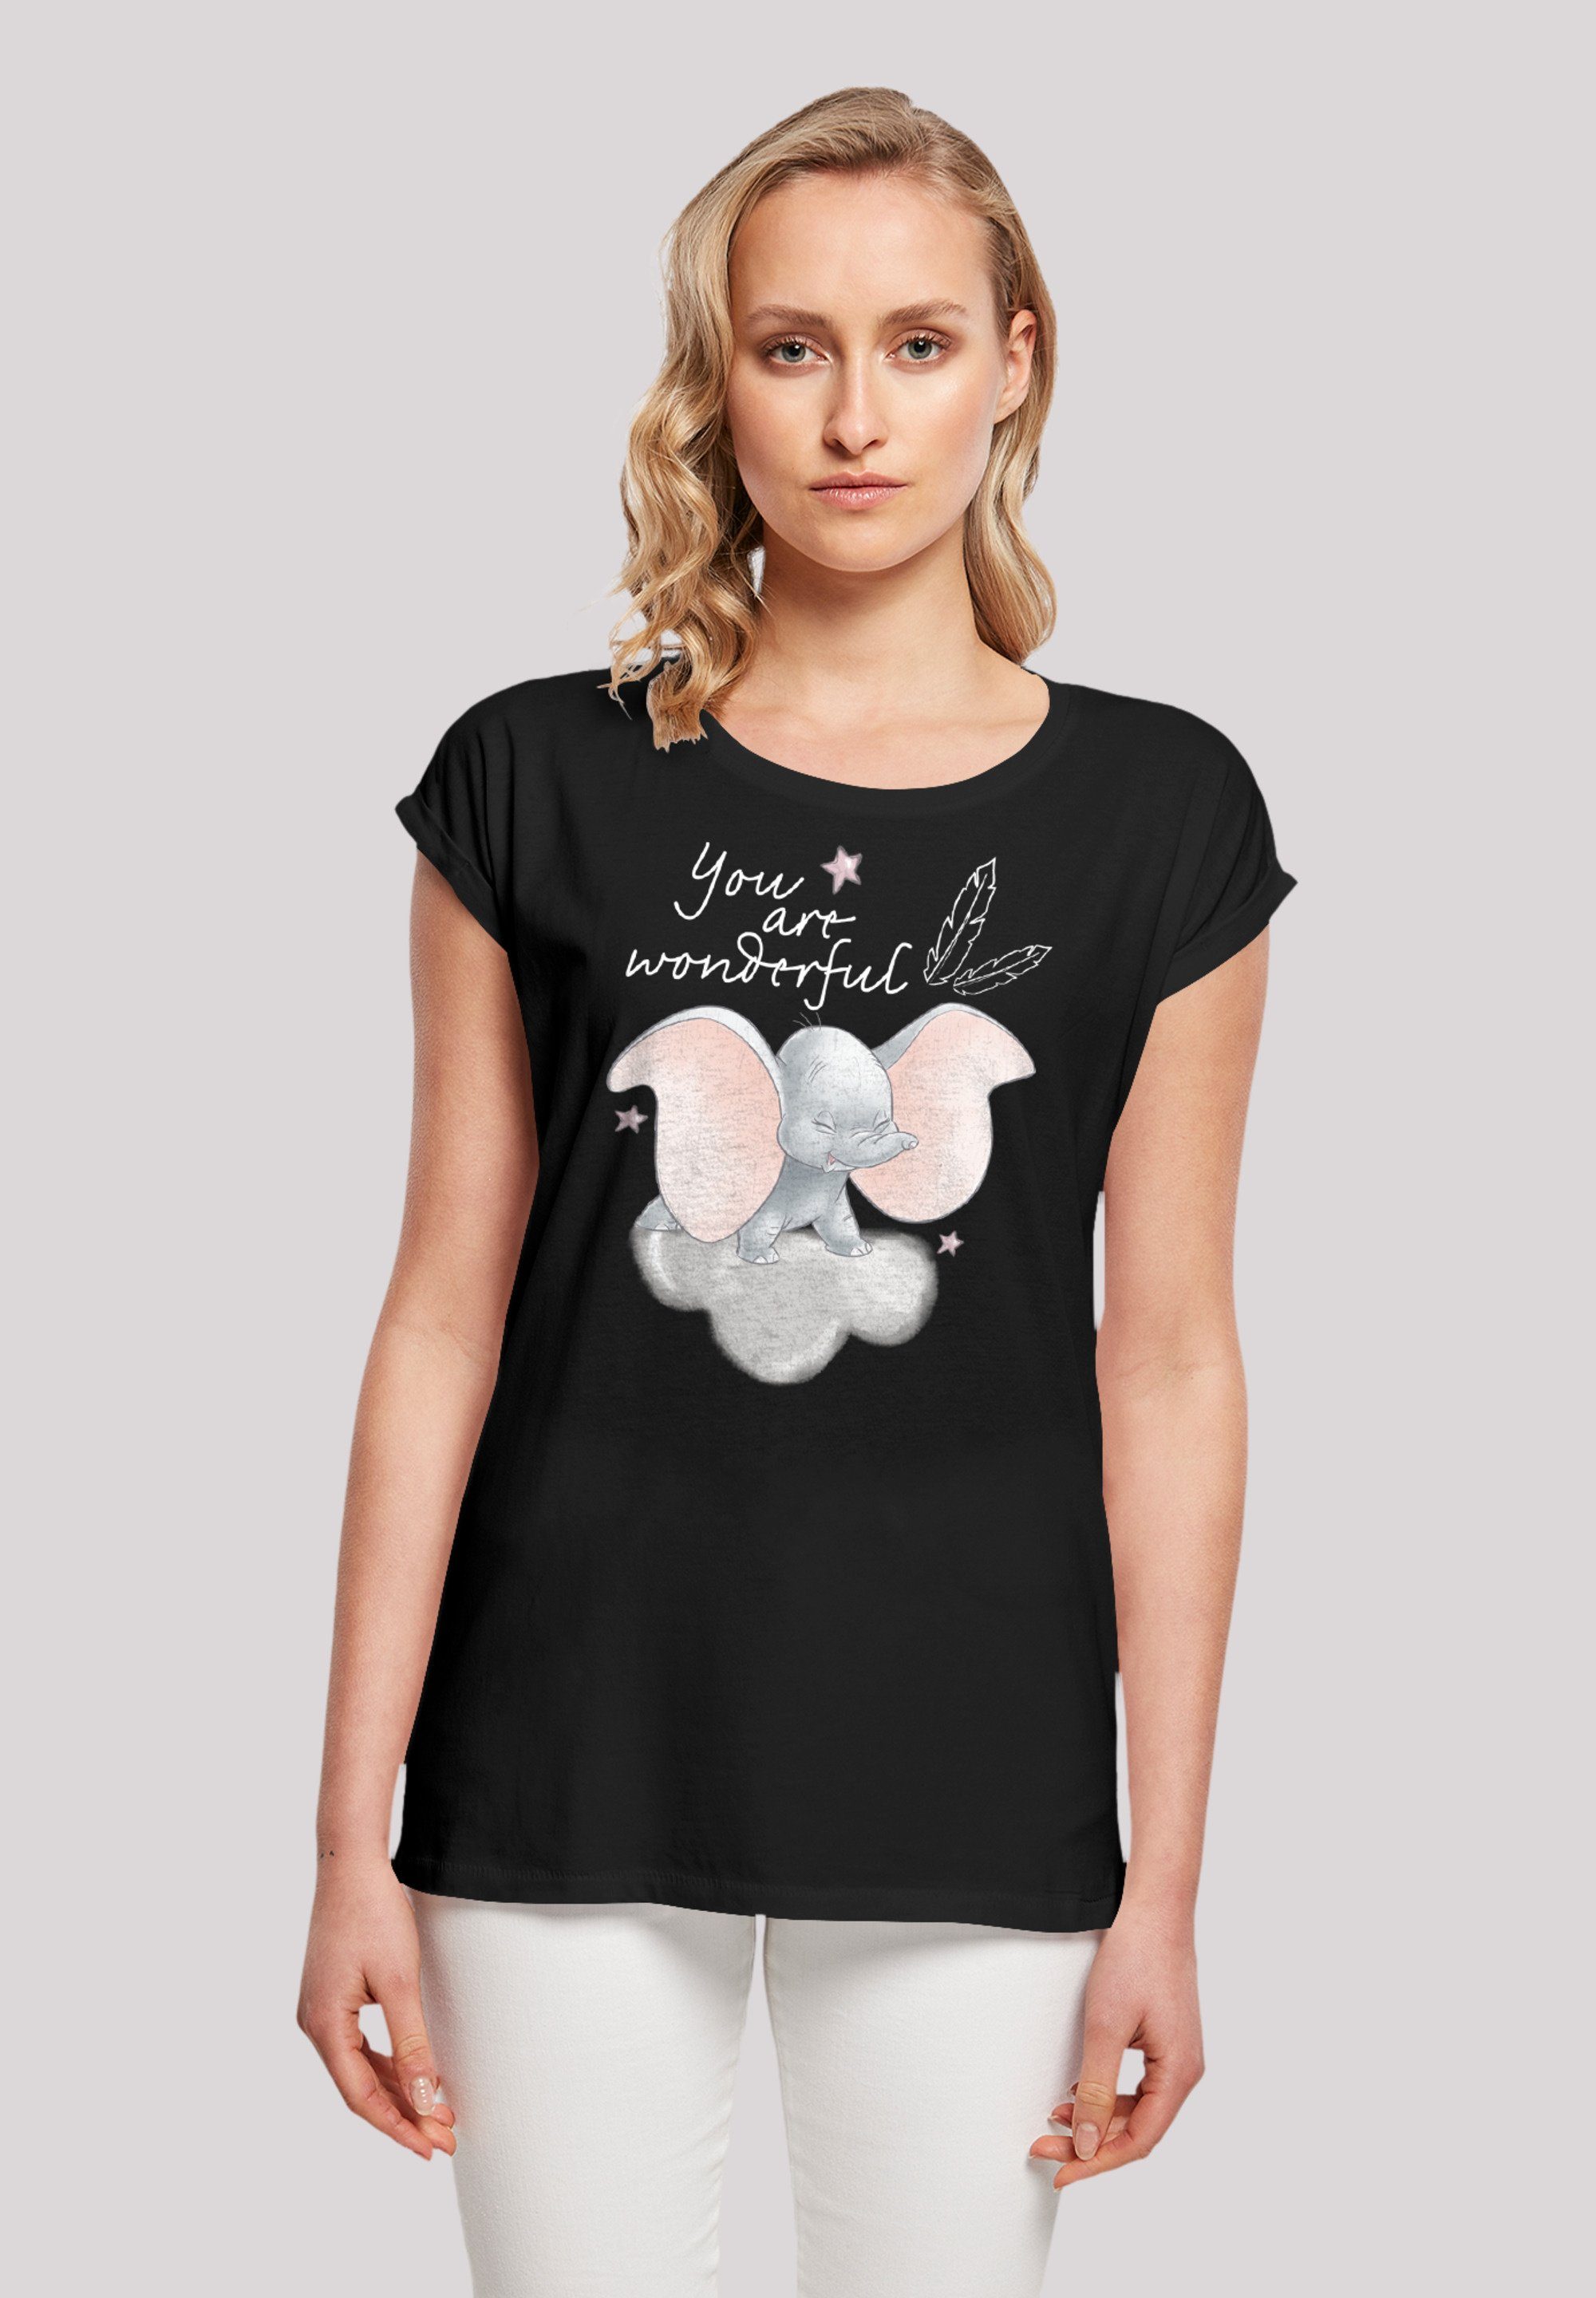 F4NT4STIC T-Shirt Disney Wonderful You Baumwollstoff Dumbo Premium Are weicher Qualität, hohem Tragekomfort Sehr mit